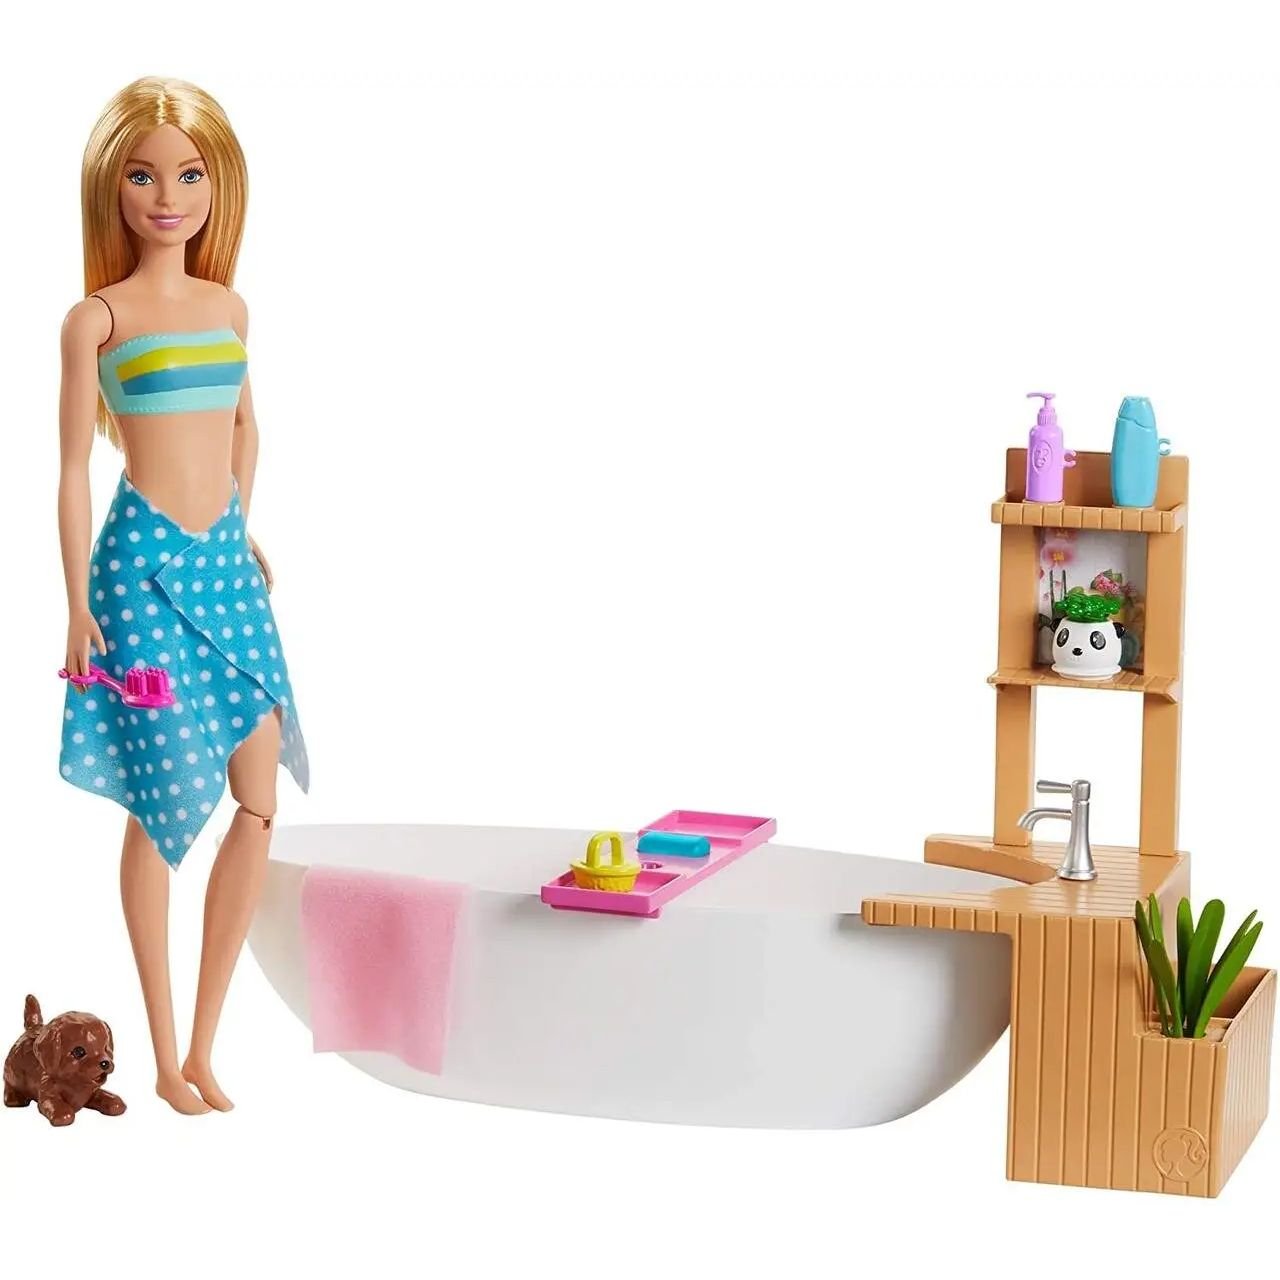 Ігровий набір Barbie Fizzy Bath Doll&Playset, 28 см - фото 1